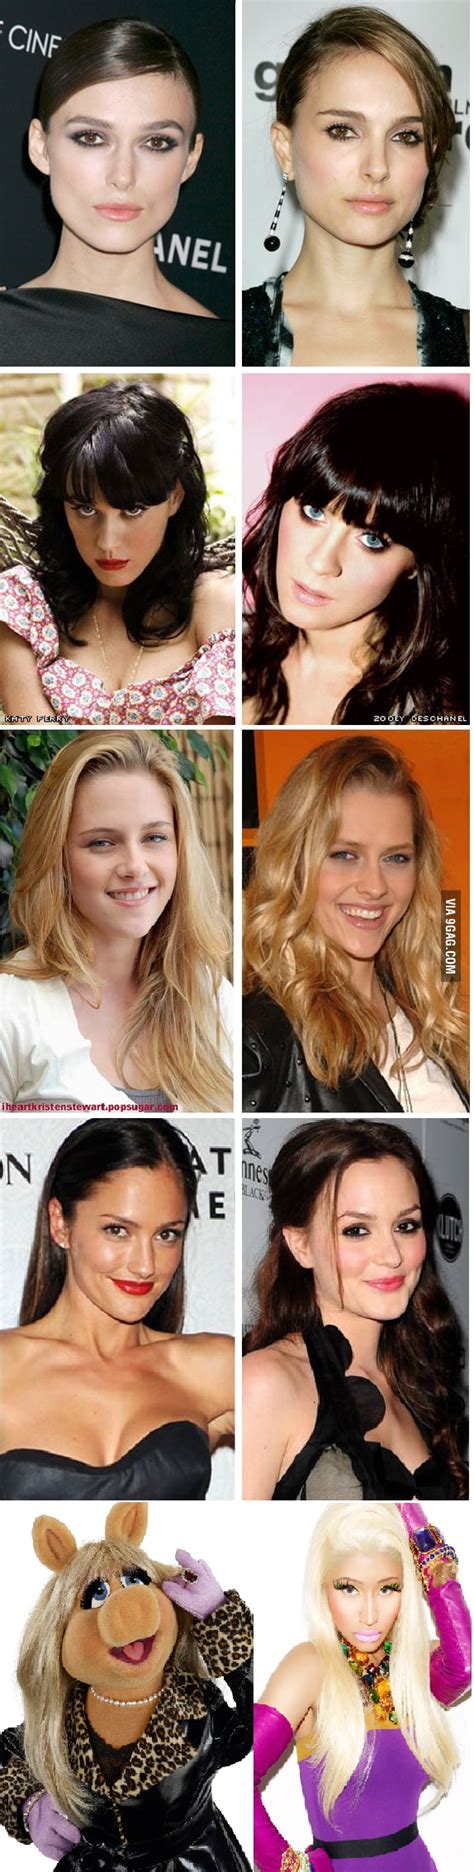 Celebrities That Look Alike 9gag